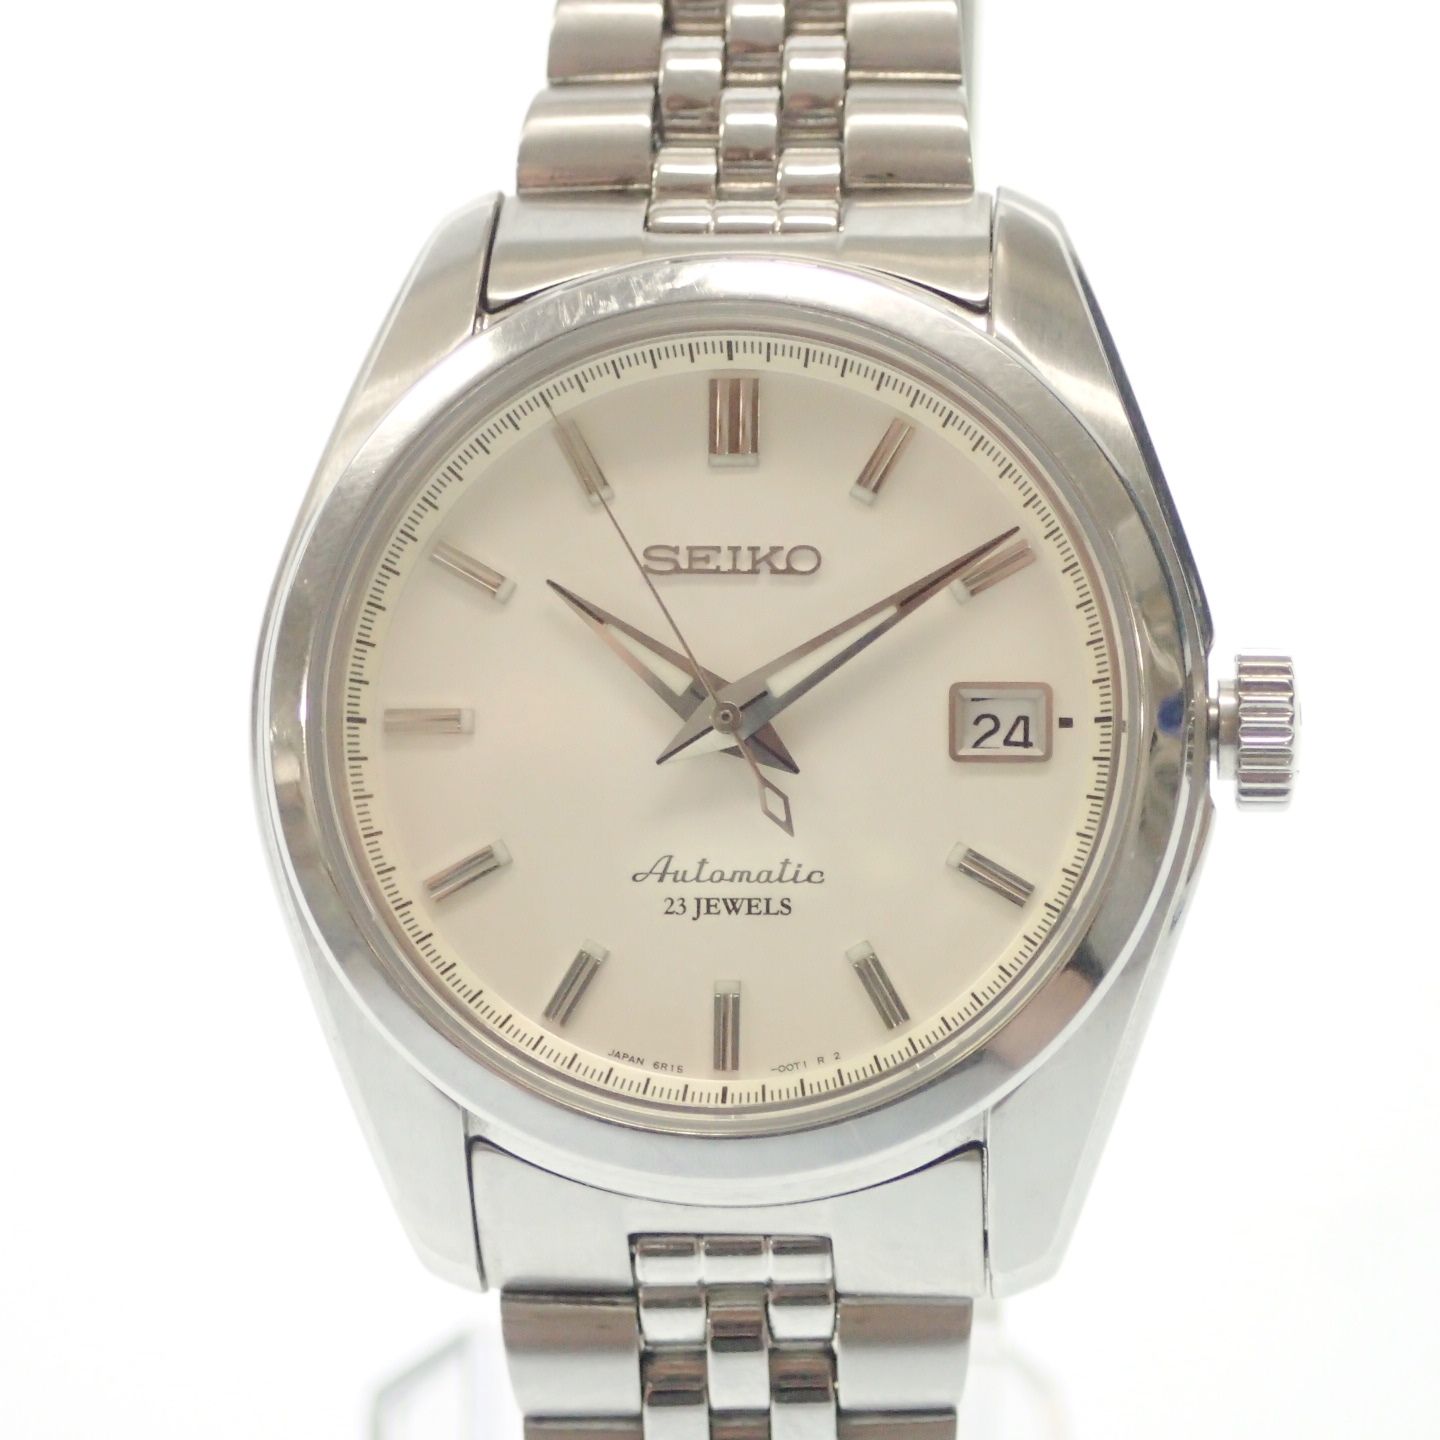 廃盤 SEIKO 腕時計 メカニカル 自動巻き SARB035 日差大きめ - 腕時計 